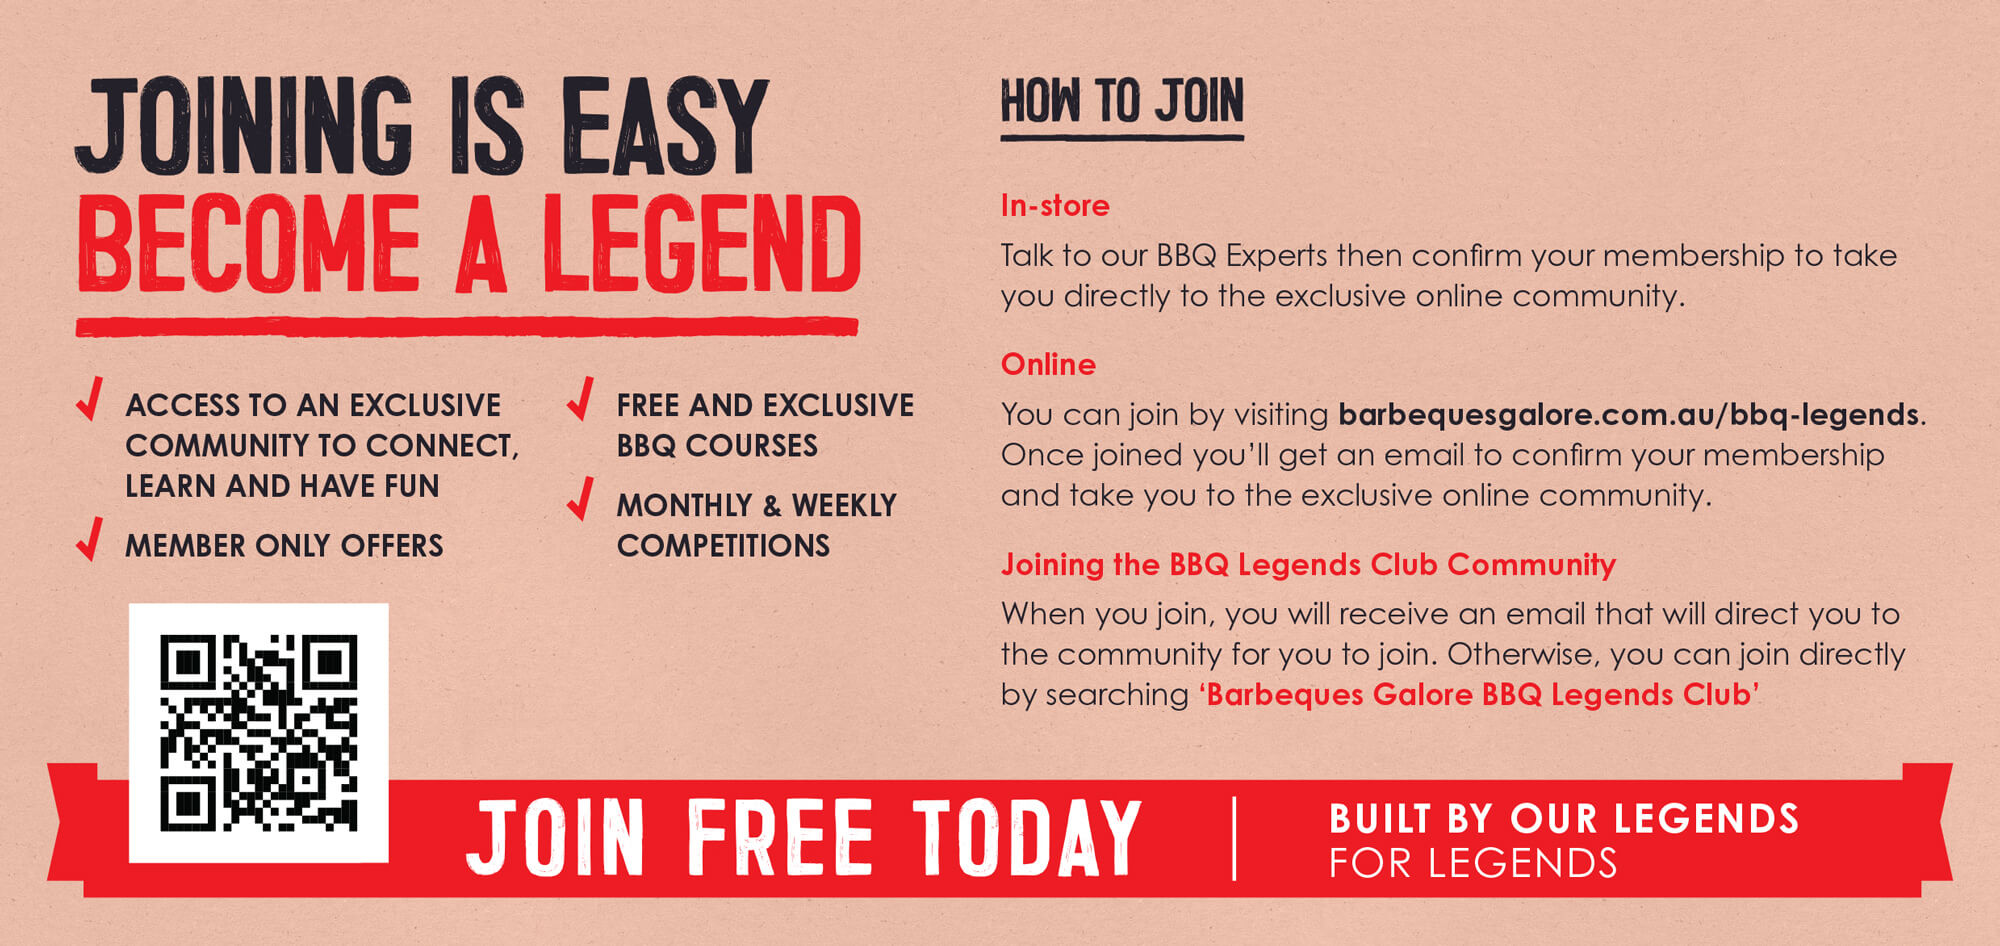 The BBQ Legends Club